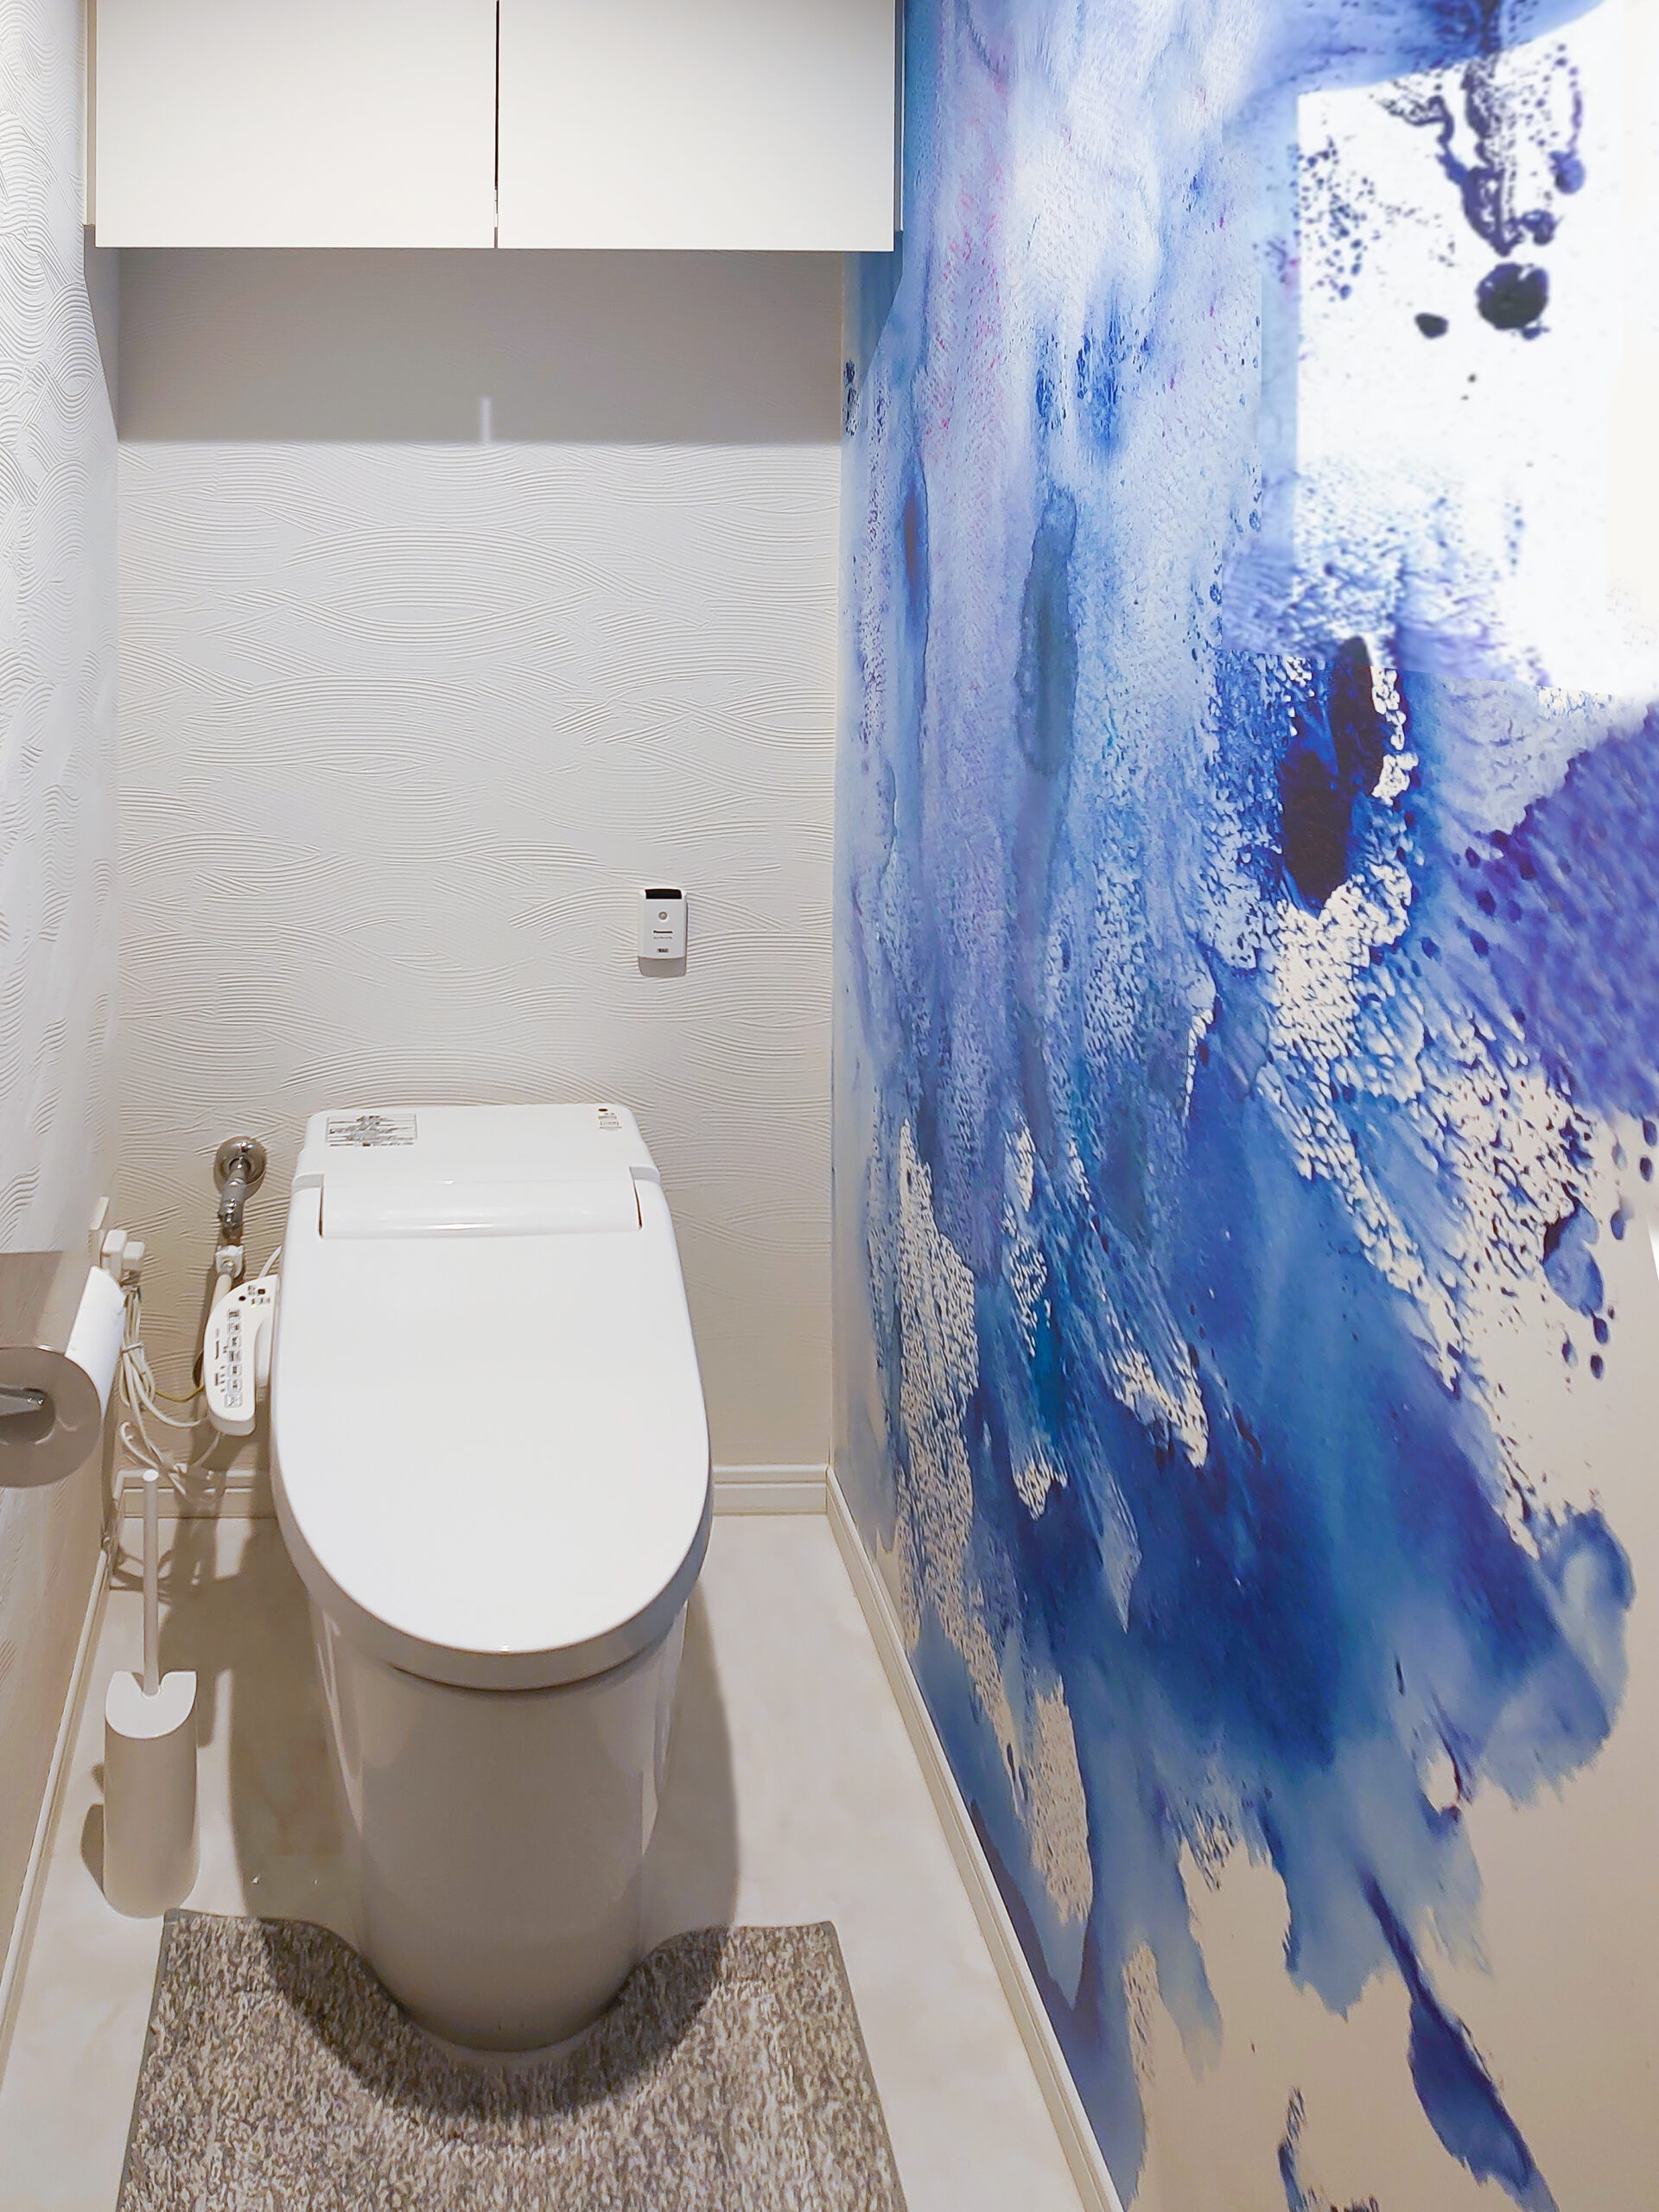 神奈川県横浜市の住宅トイレの壁面に日傘作家・ひがしちかの描く「WATER DANCE / CRCH001」の施工写真